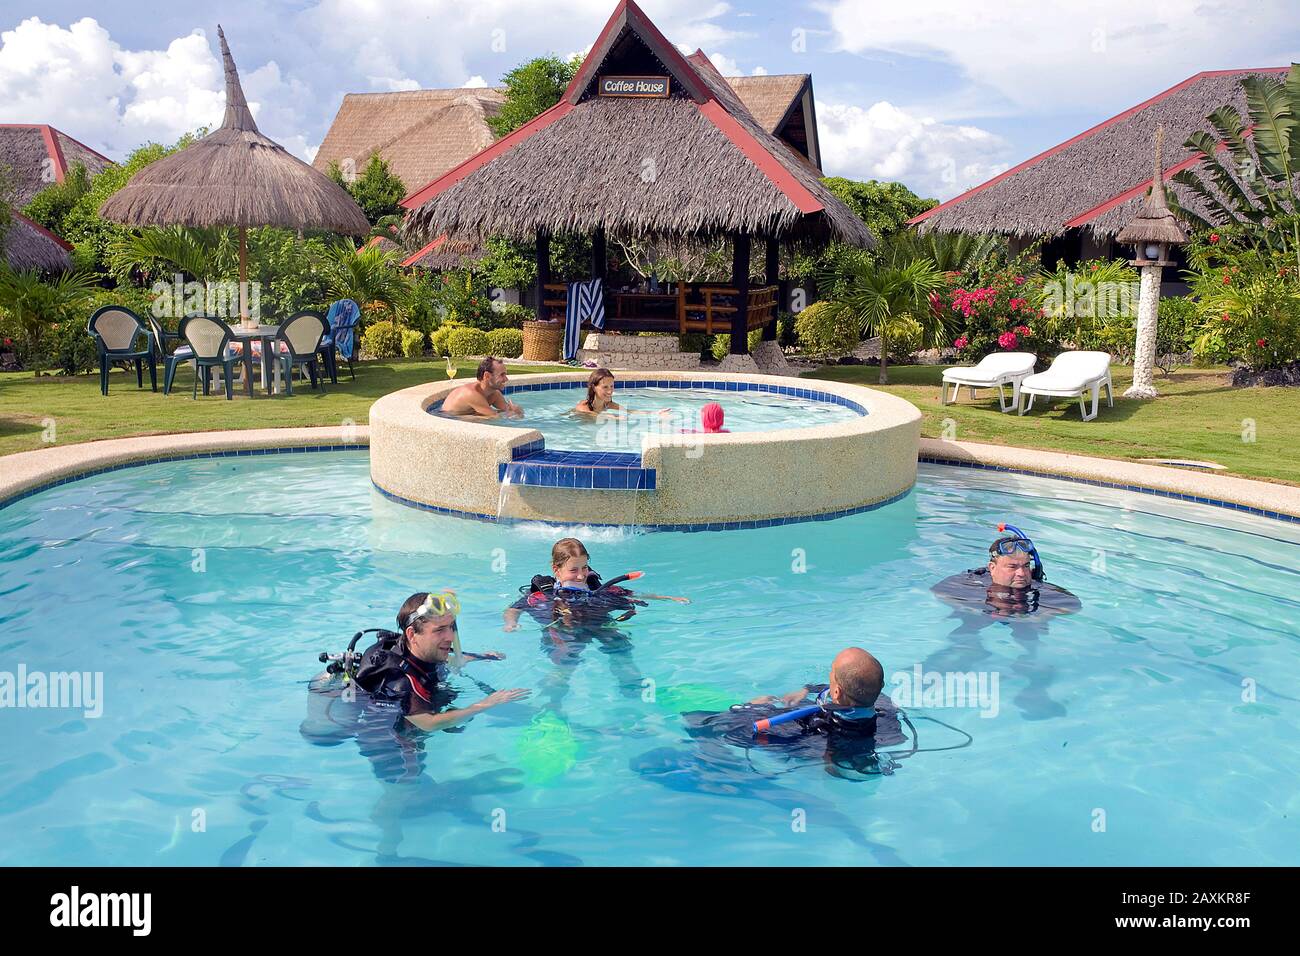 Sporttaucher, Anfängerkurs im Pool von Dolphin House, kleines Resort am weißen Strand, Moalboal, Cebu, Philippinen Stockfoto